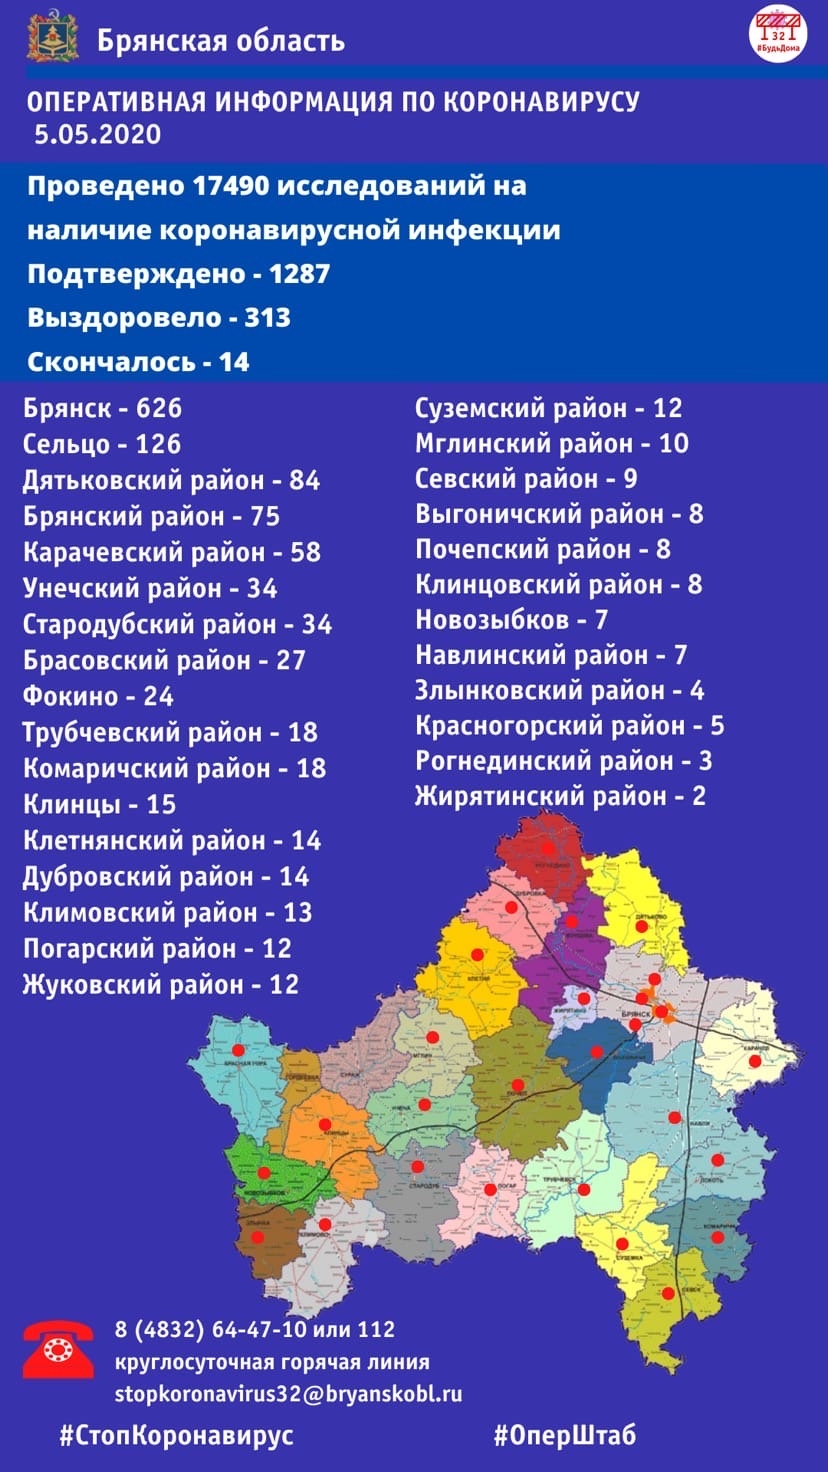 В Брянской области подтверждено 1287 заболевших COVID-19